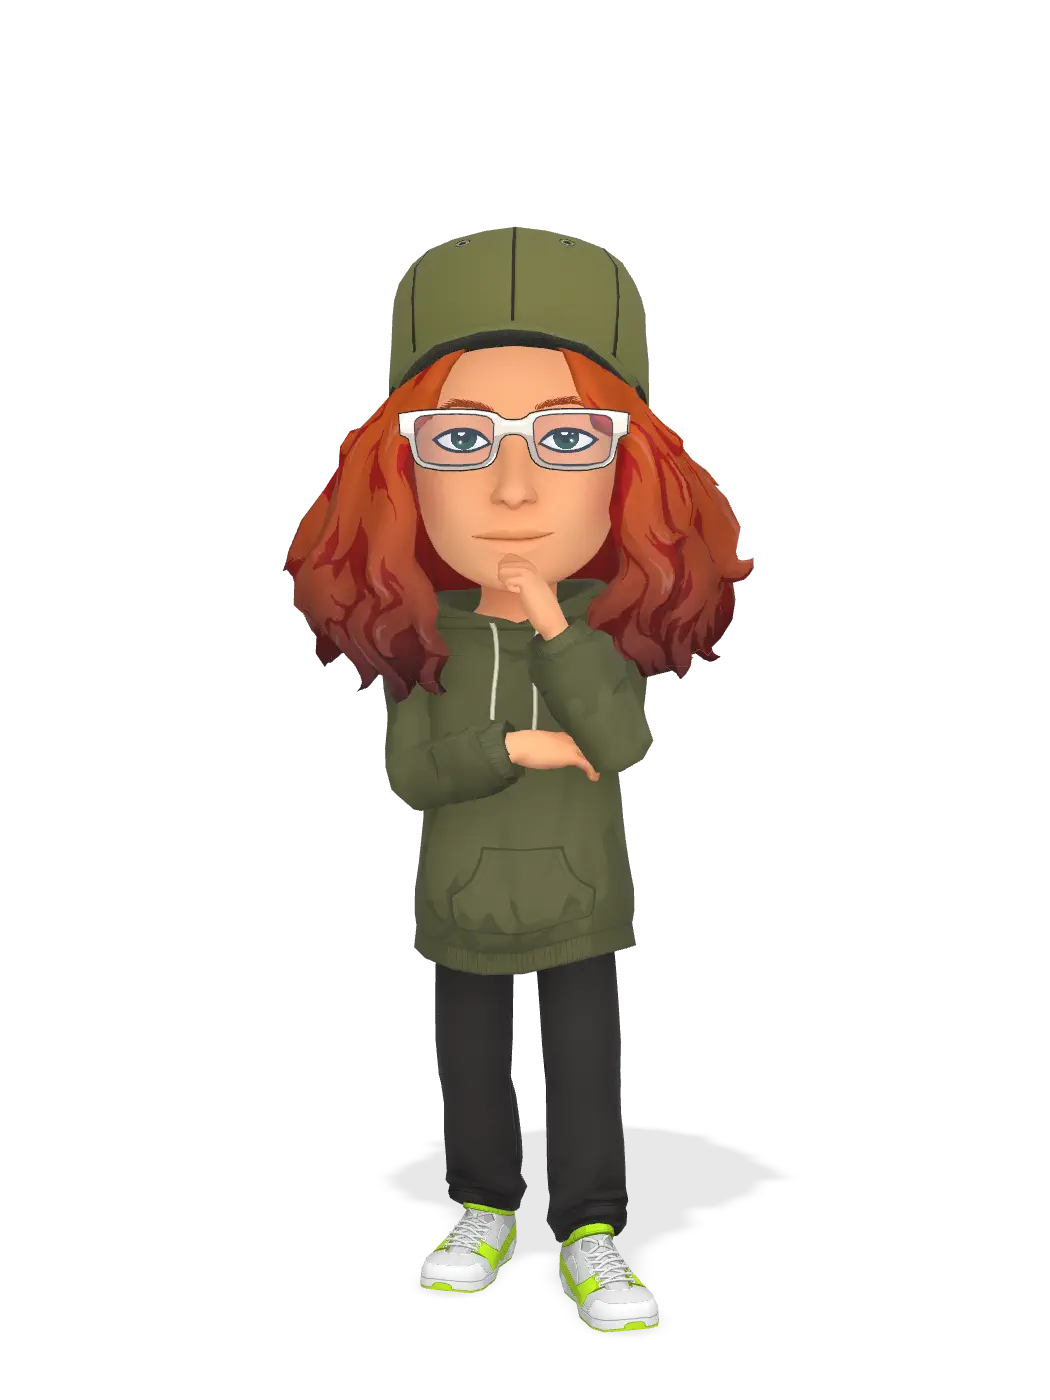 3D Bitmoji for gjennestadvgs avatar